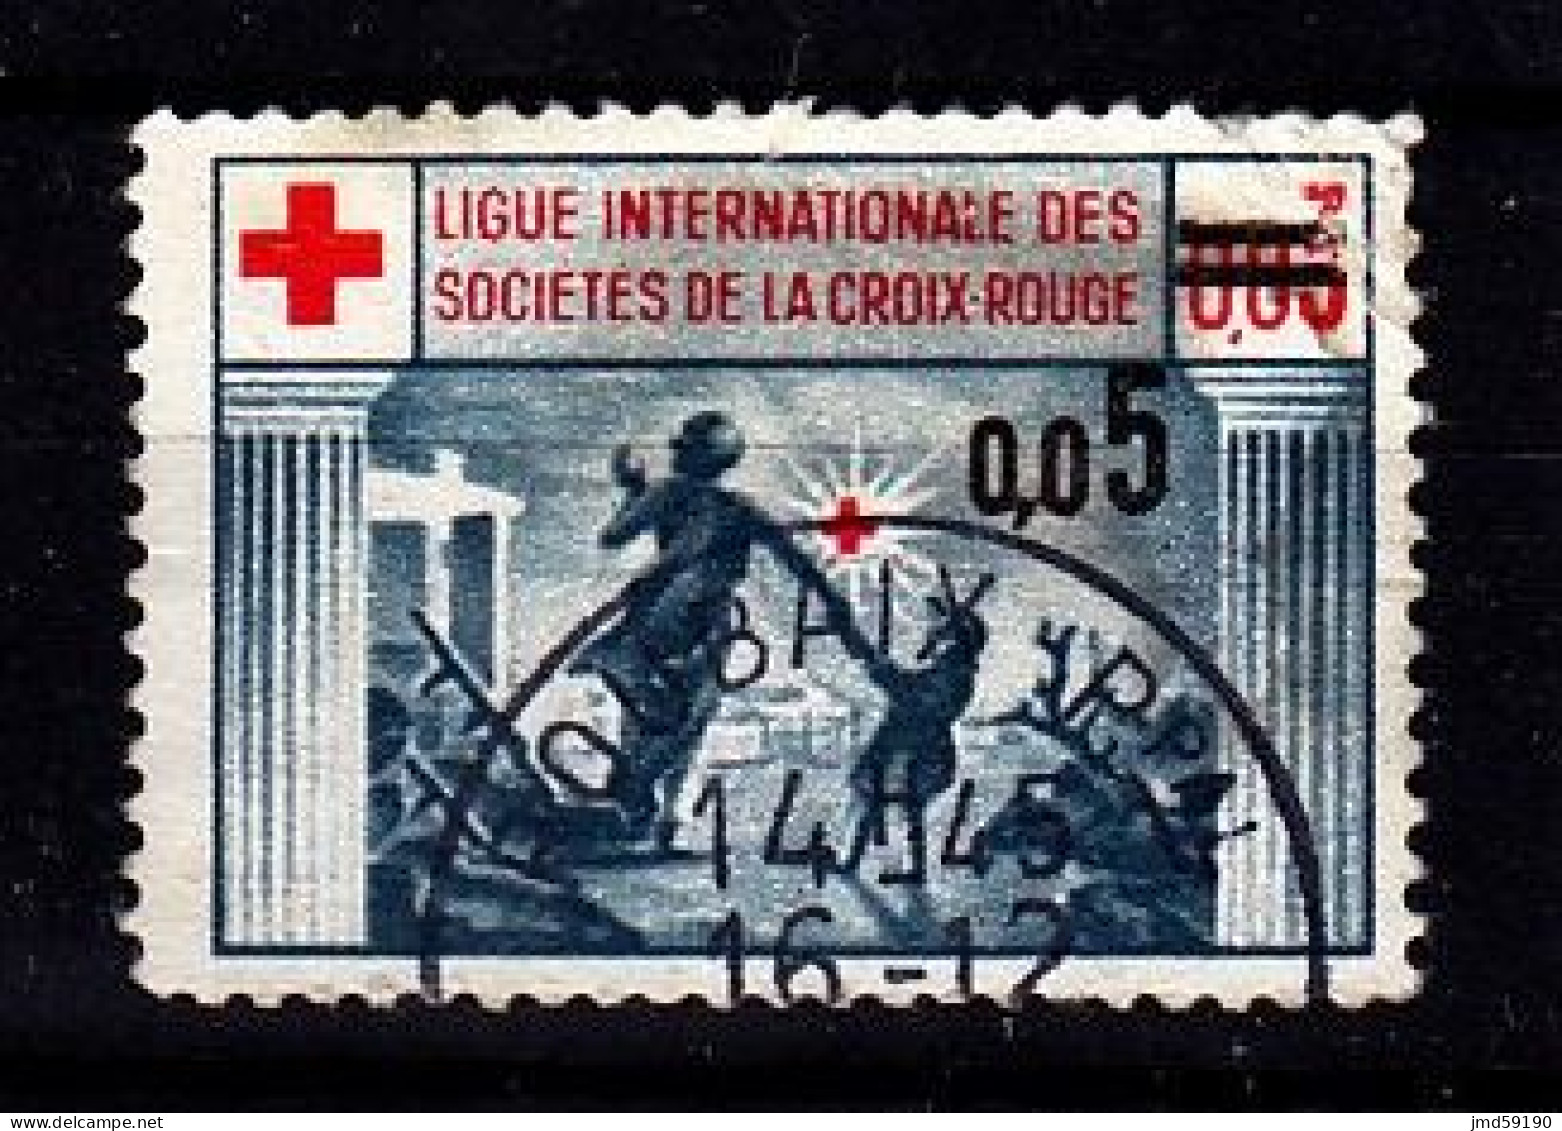 France - Vignette Oblitérée Ligue Internationale Des Sociétés De La Croix Rouge Avec Surcharge 0.05 - Croce Rossa